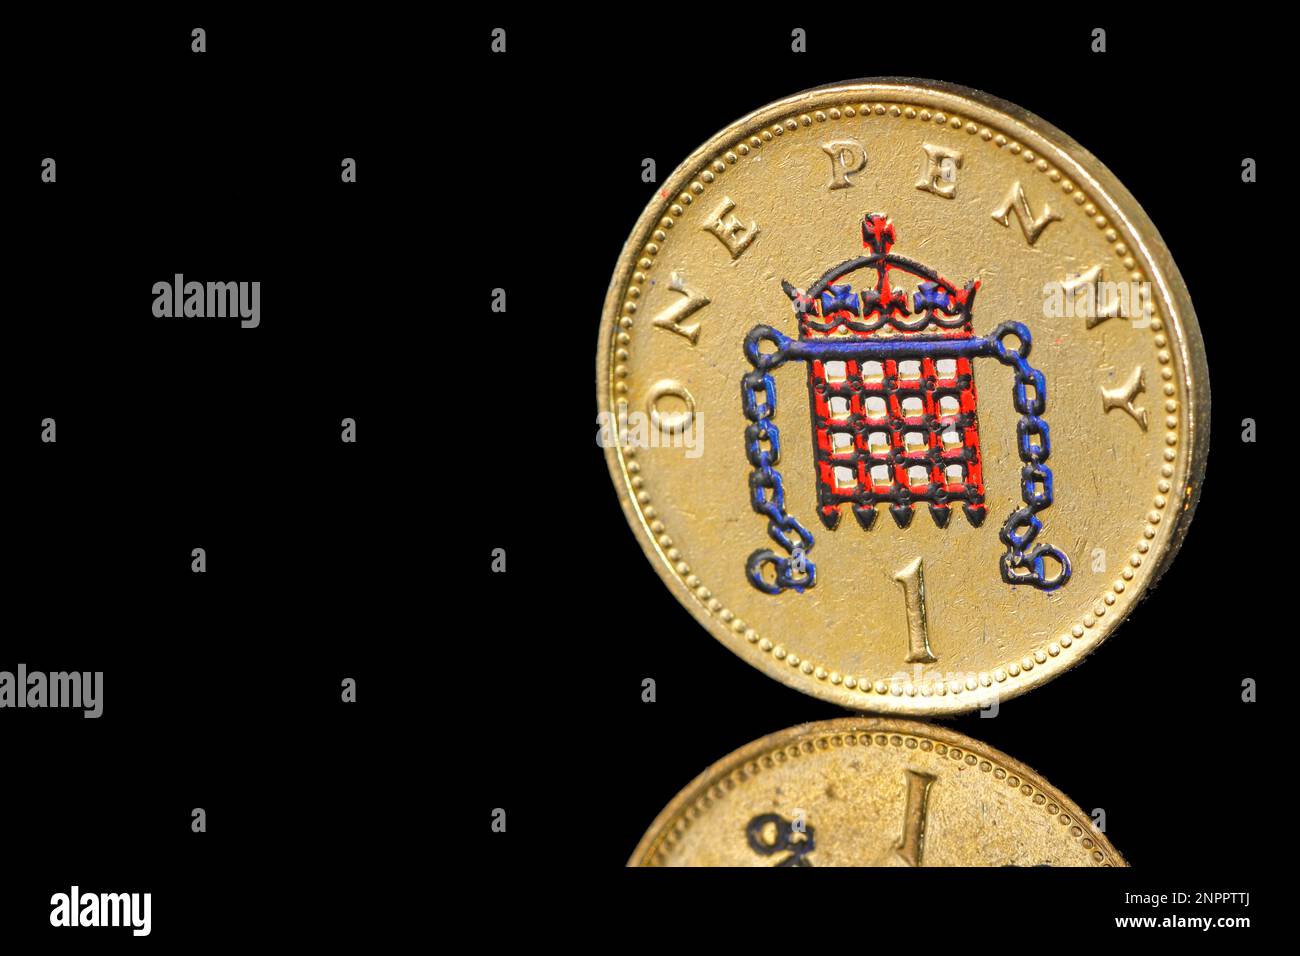 Una moneda de un centavo coloreada del reino unido con un portcullis coronado con cadenas Foto de stock